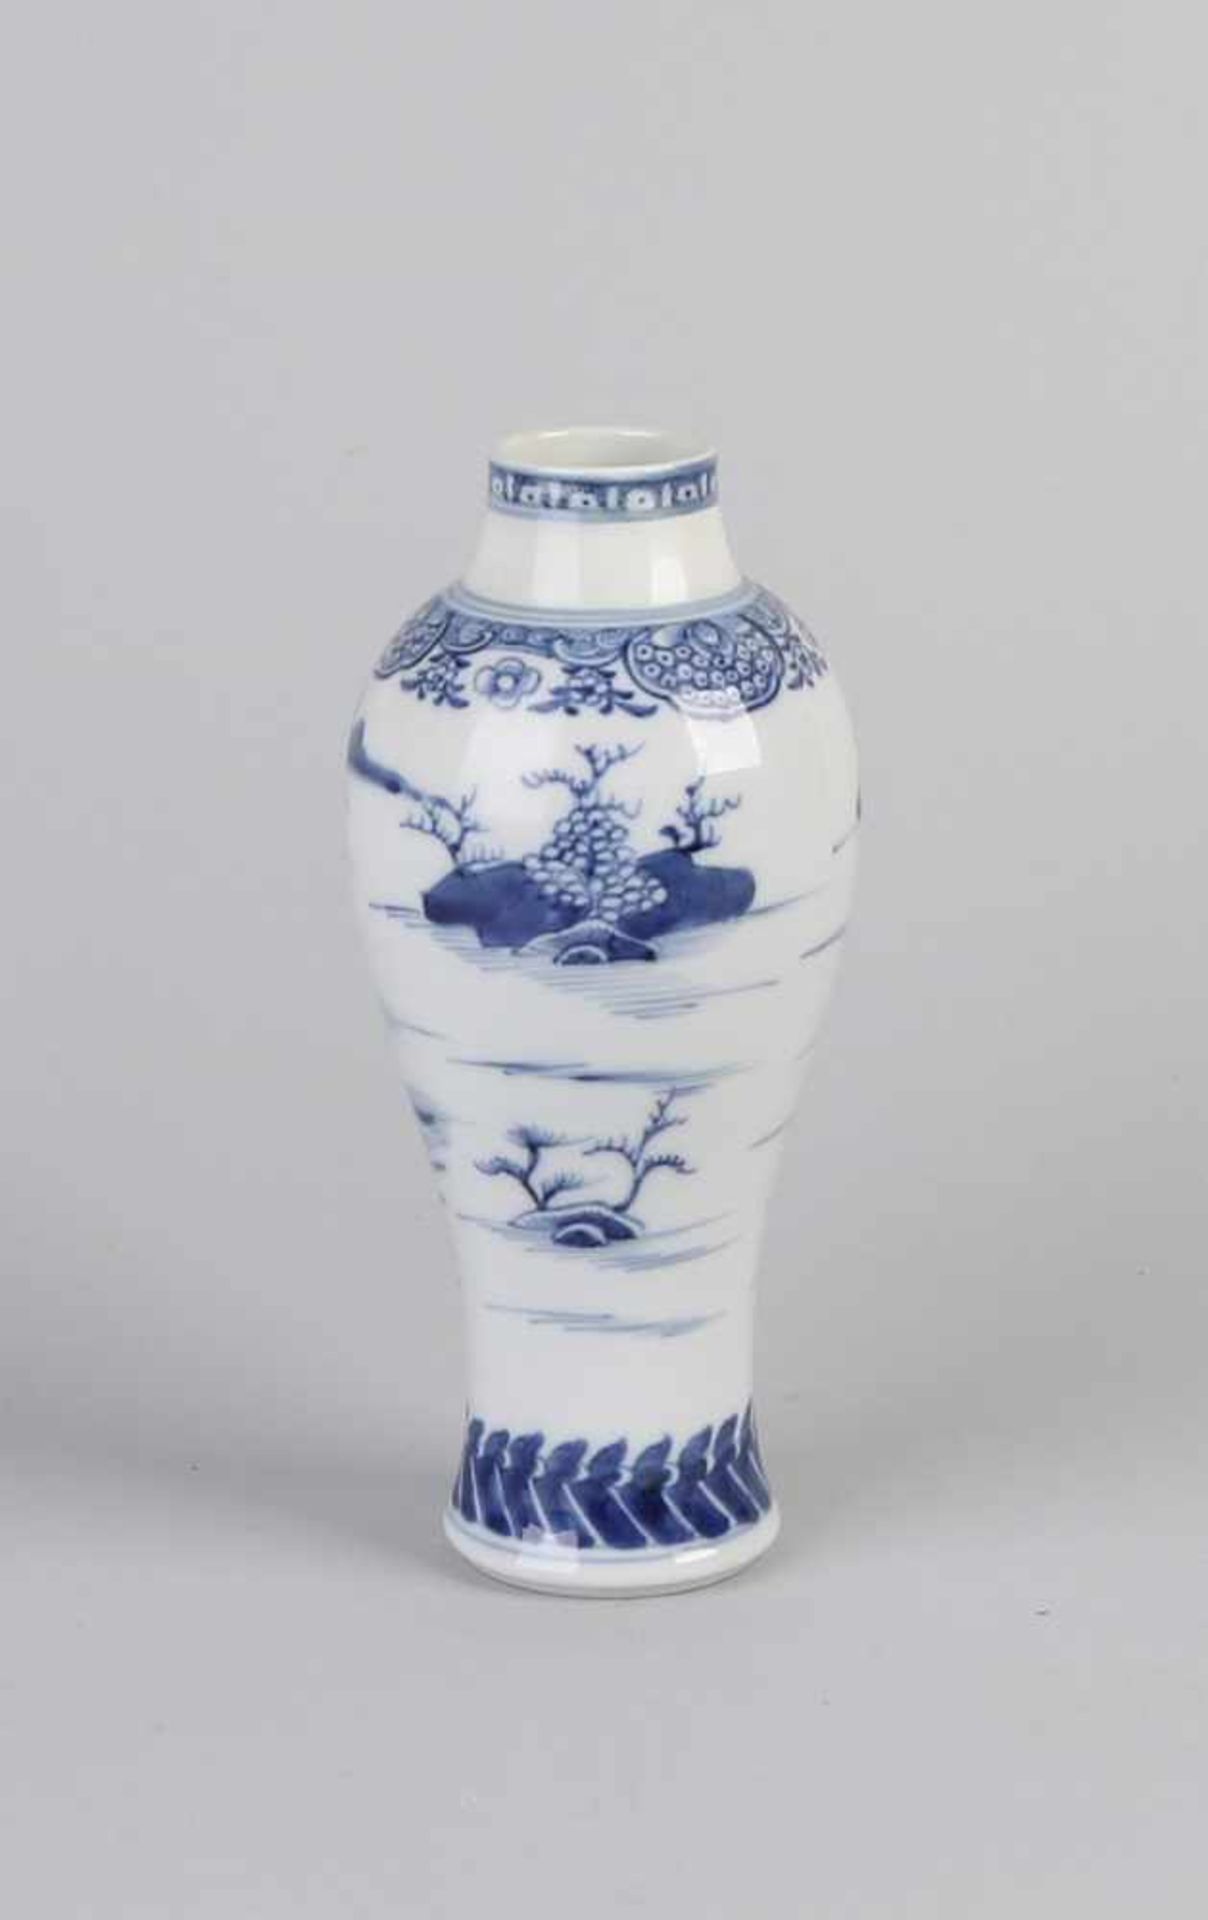 Queng Lungenvase aus chinesischem Porzellan aus dem 18. Jahrhundert mit Landschaftsdekoration auf - Bild 2 aus 2